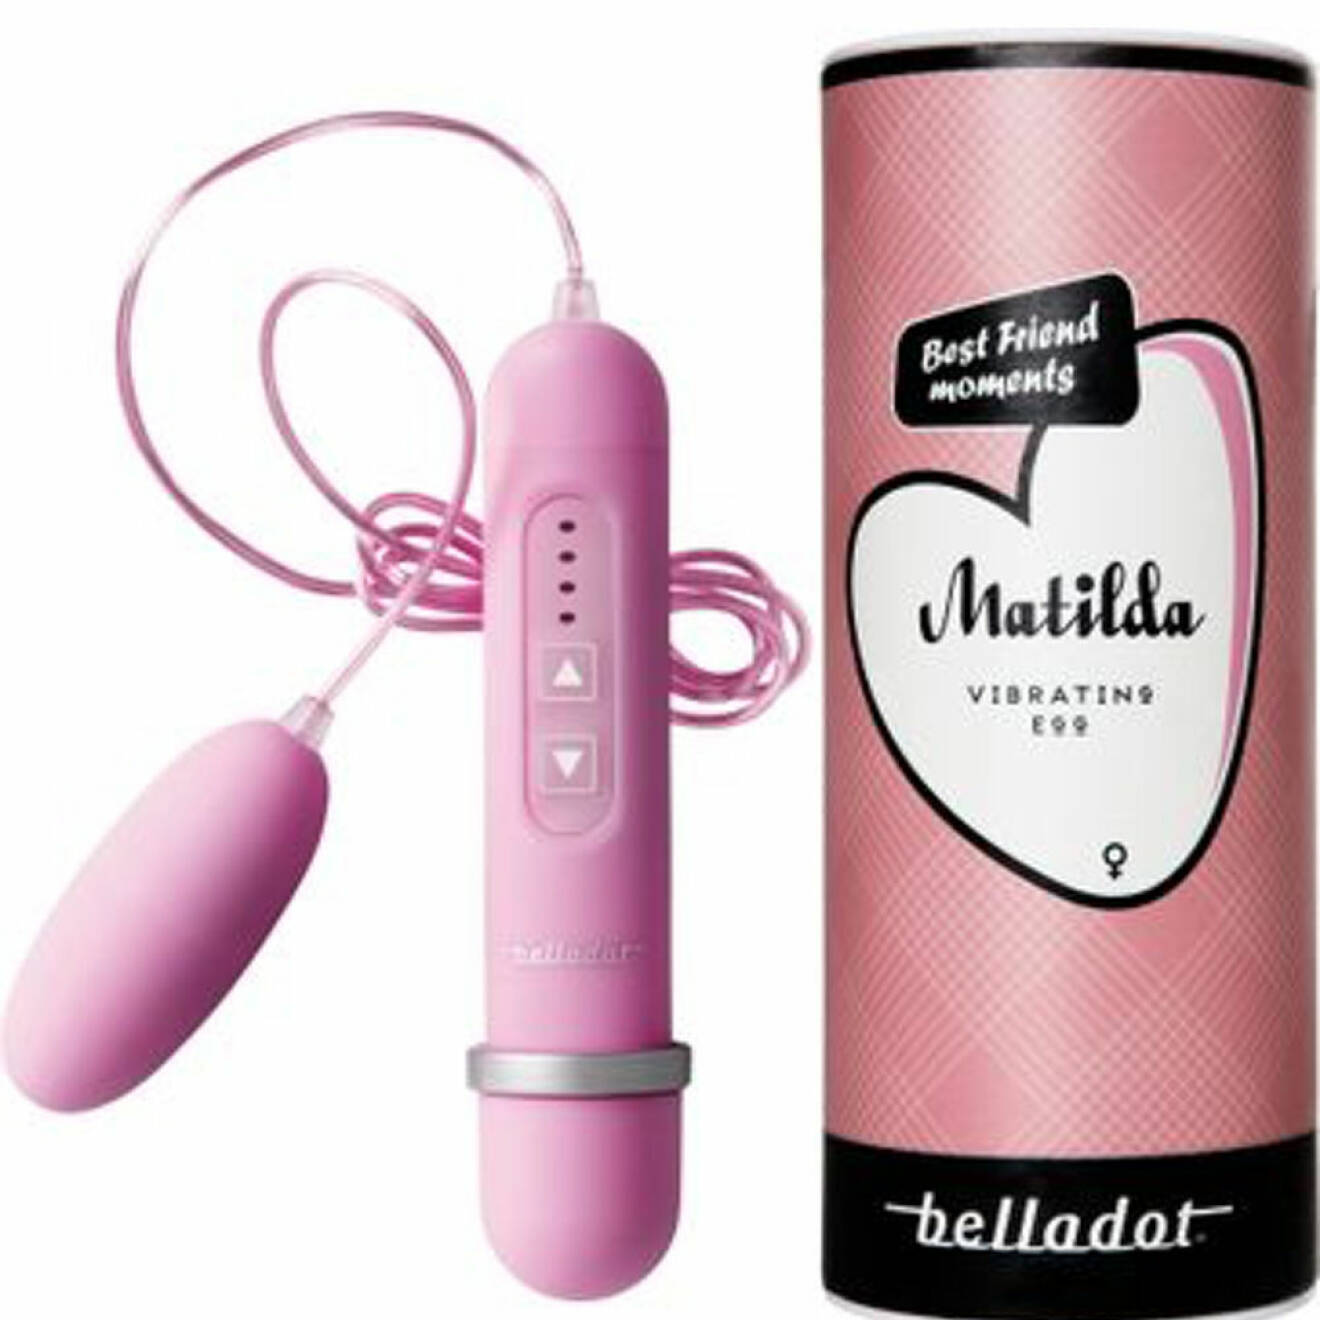 Rosa vibrator från belladot